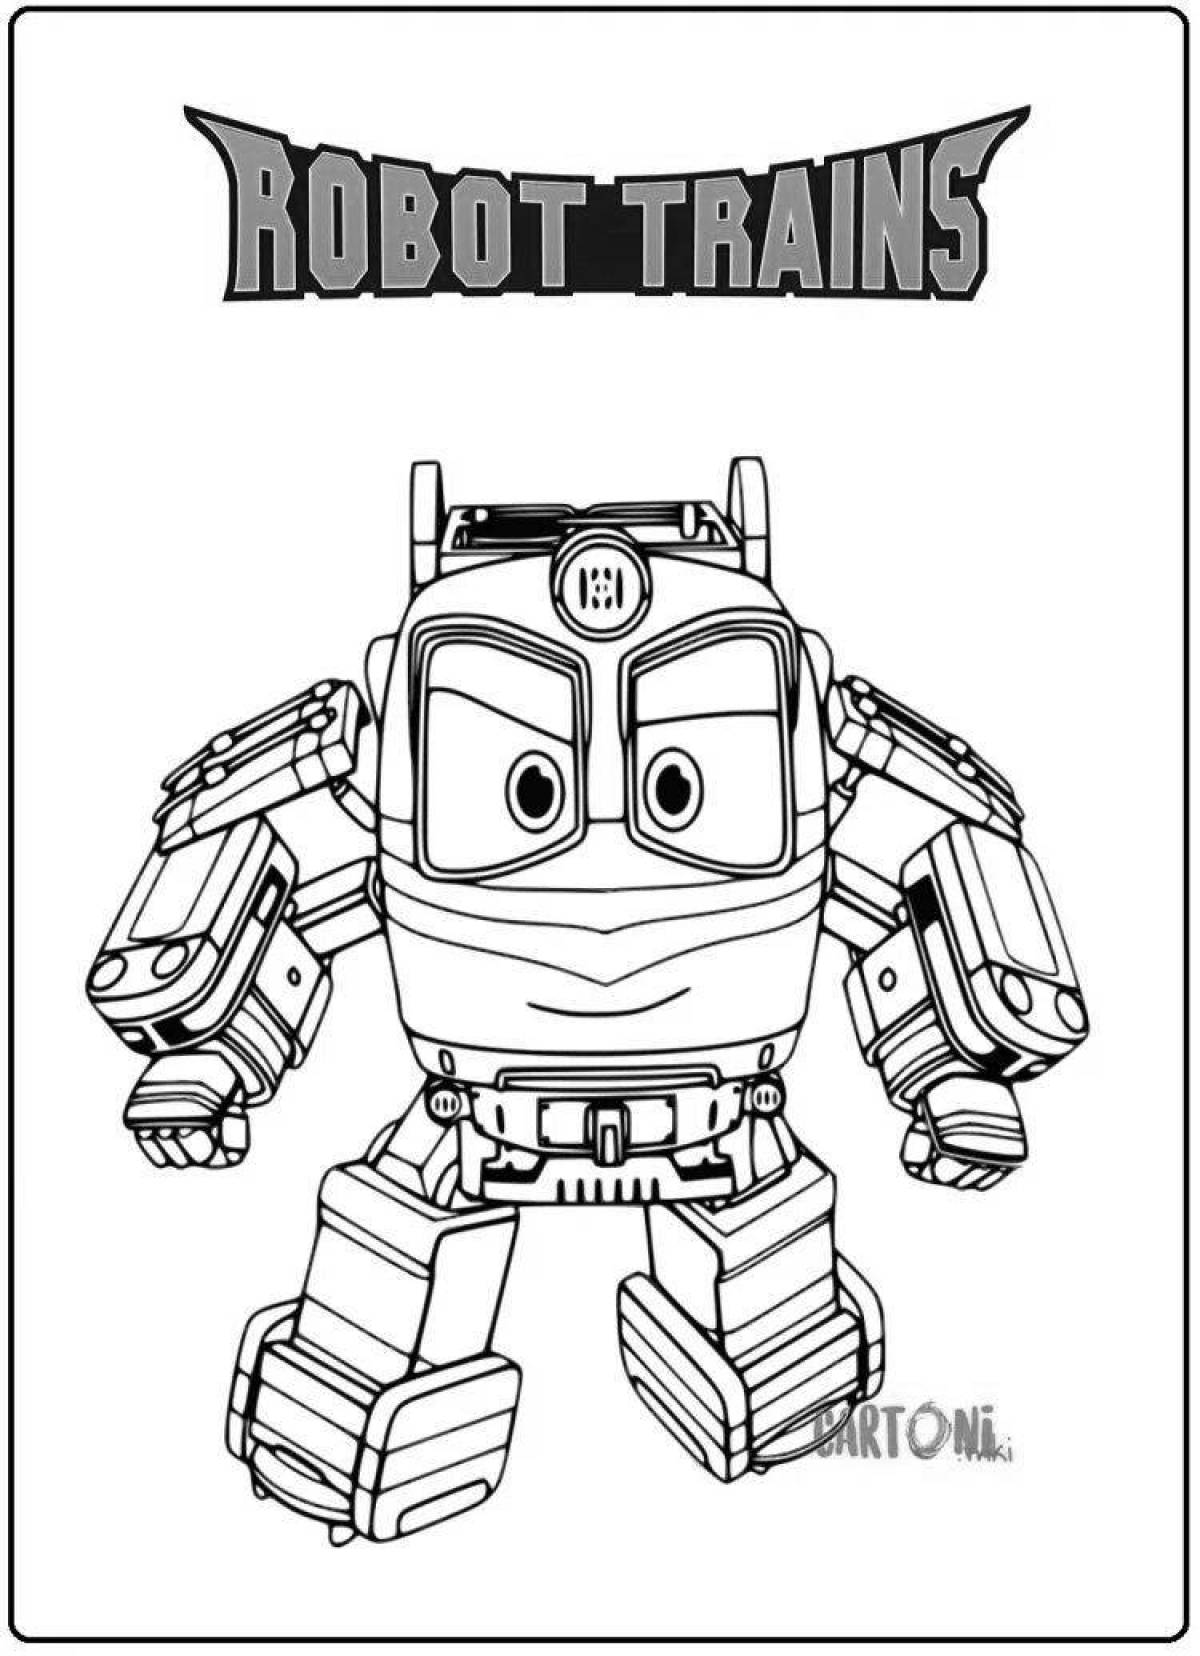 Duke train robots #13